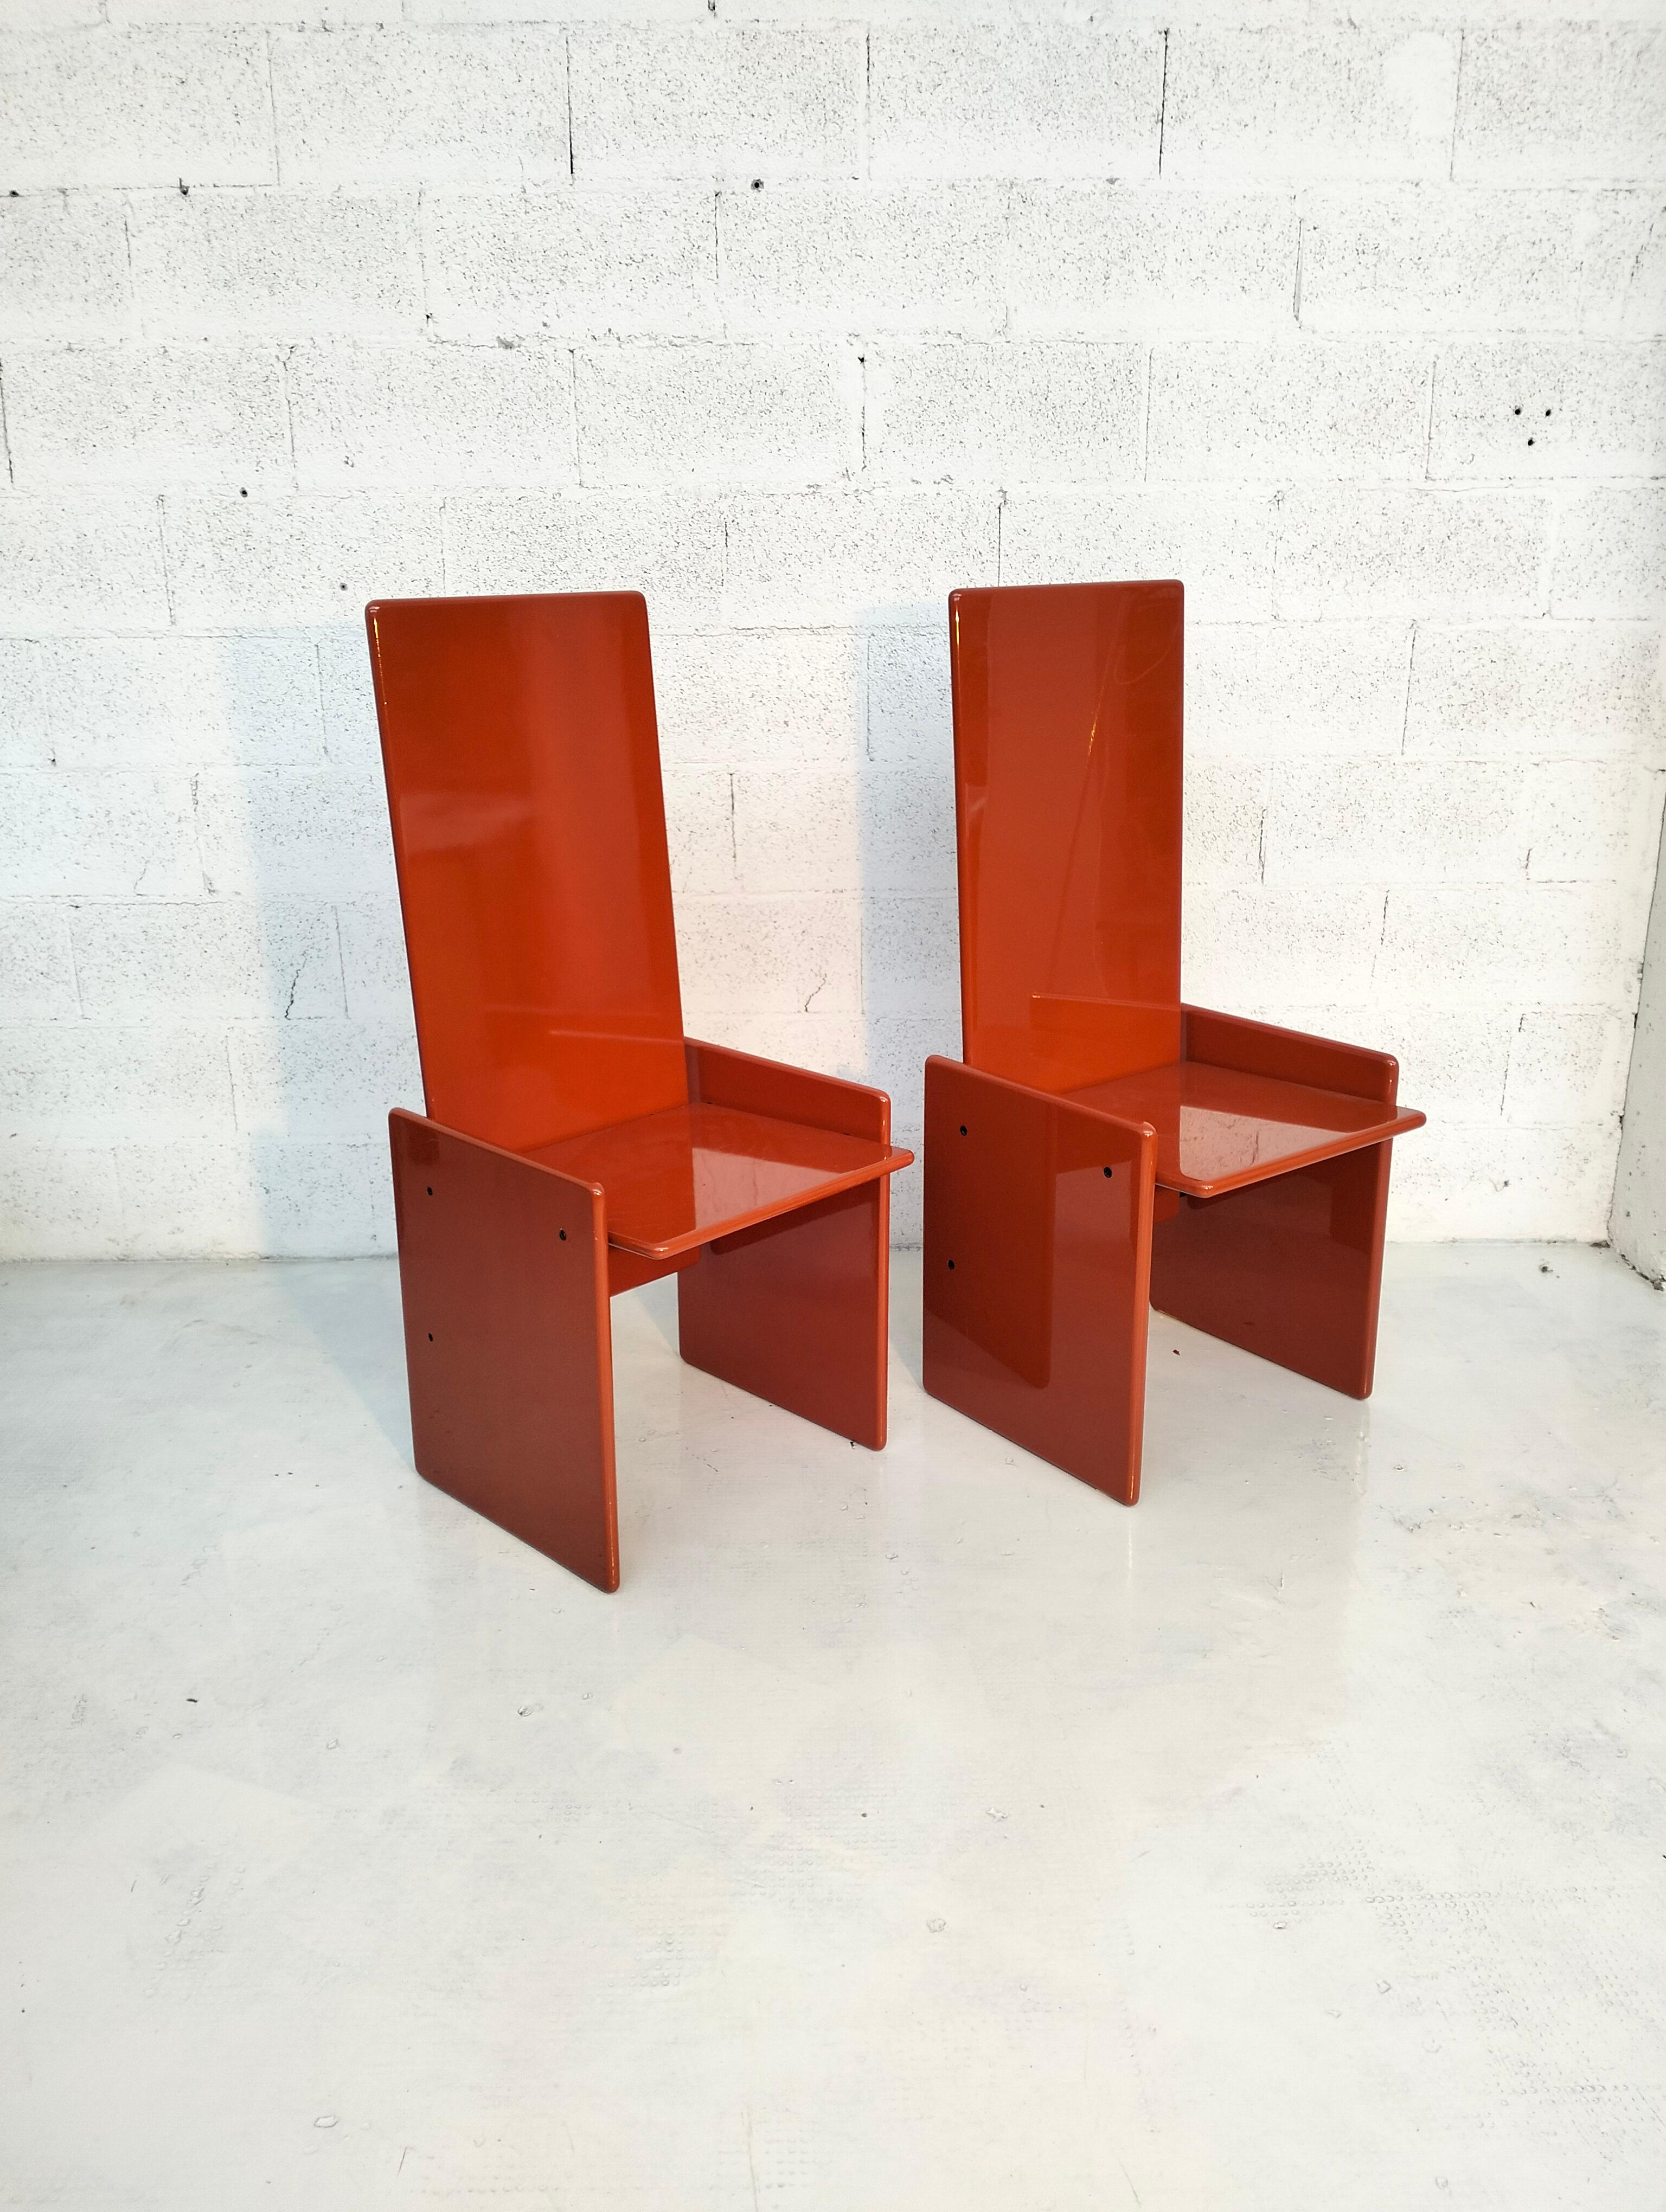 Italian Pair of 2 orange Kazuki chairs by Kazuhide Takahama for Simon 60s, 70s